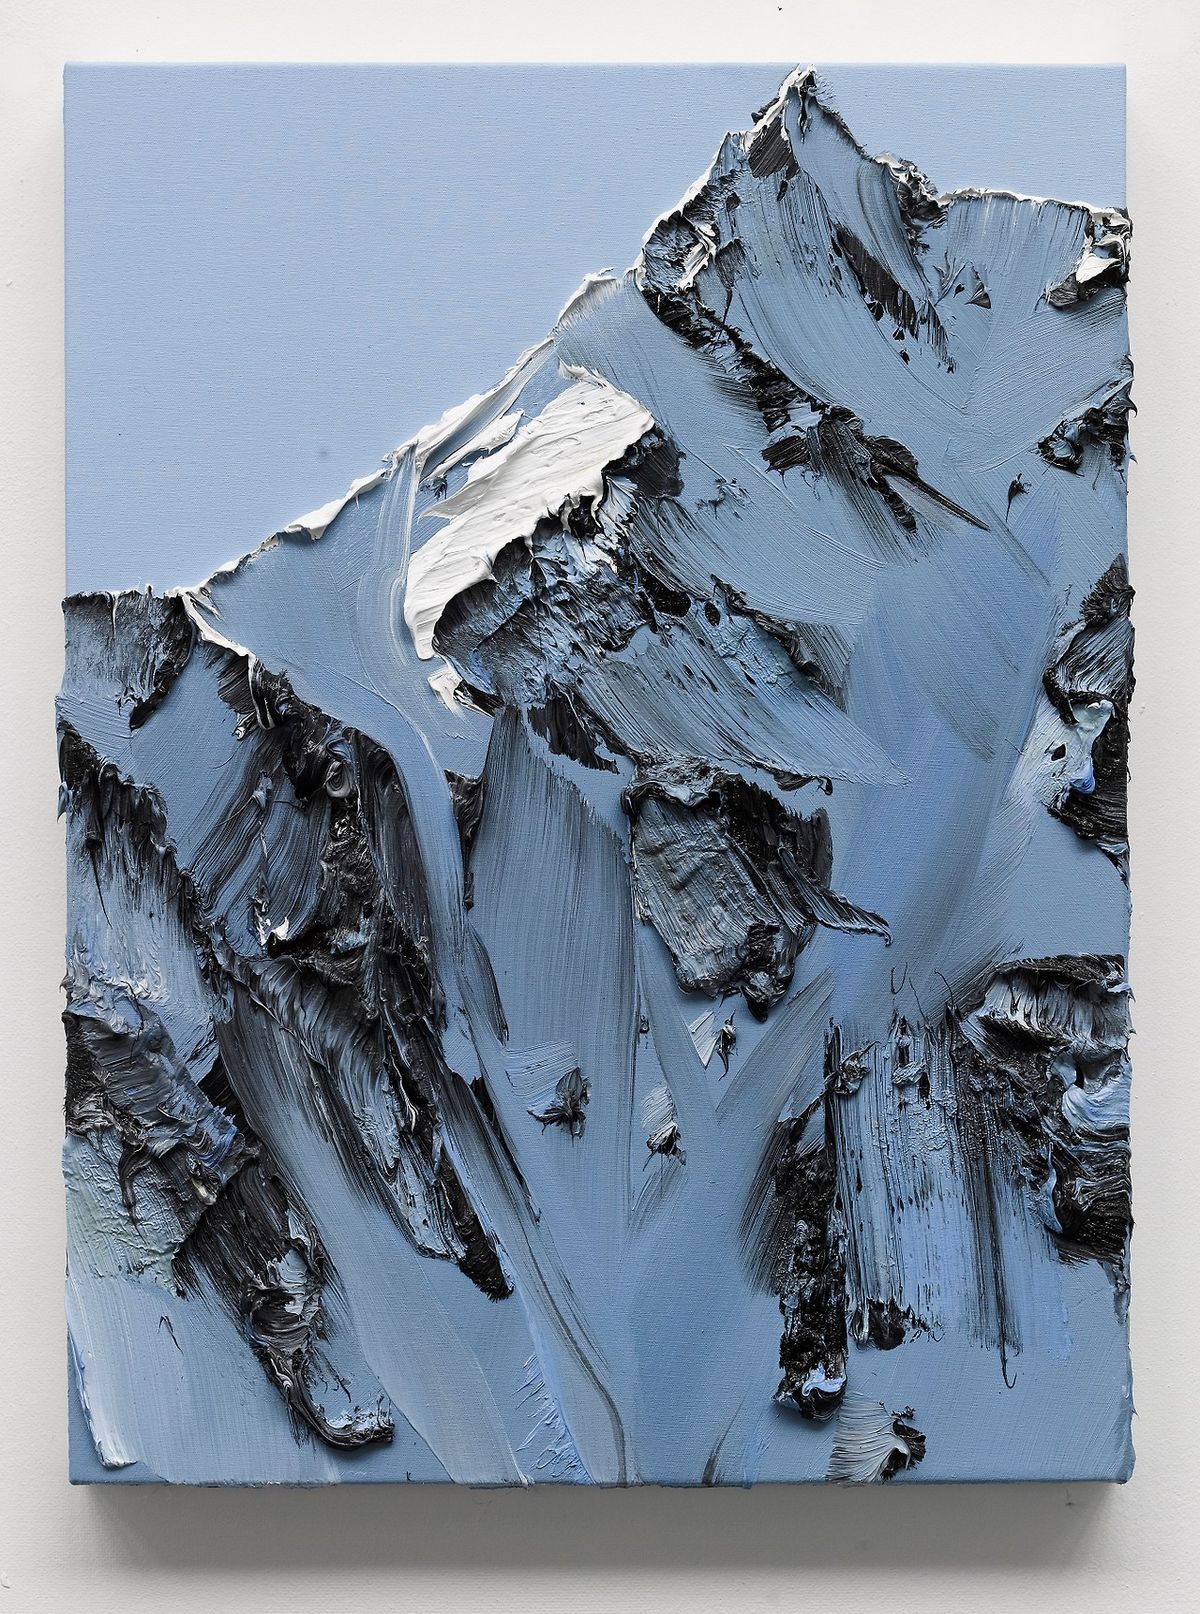 Величественные горы в картинах Конрада Джона Годли